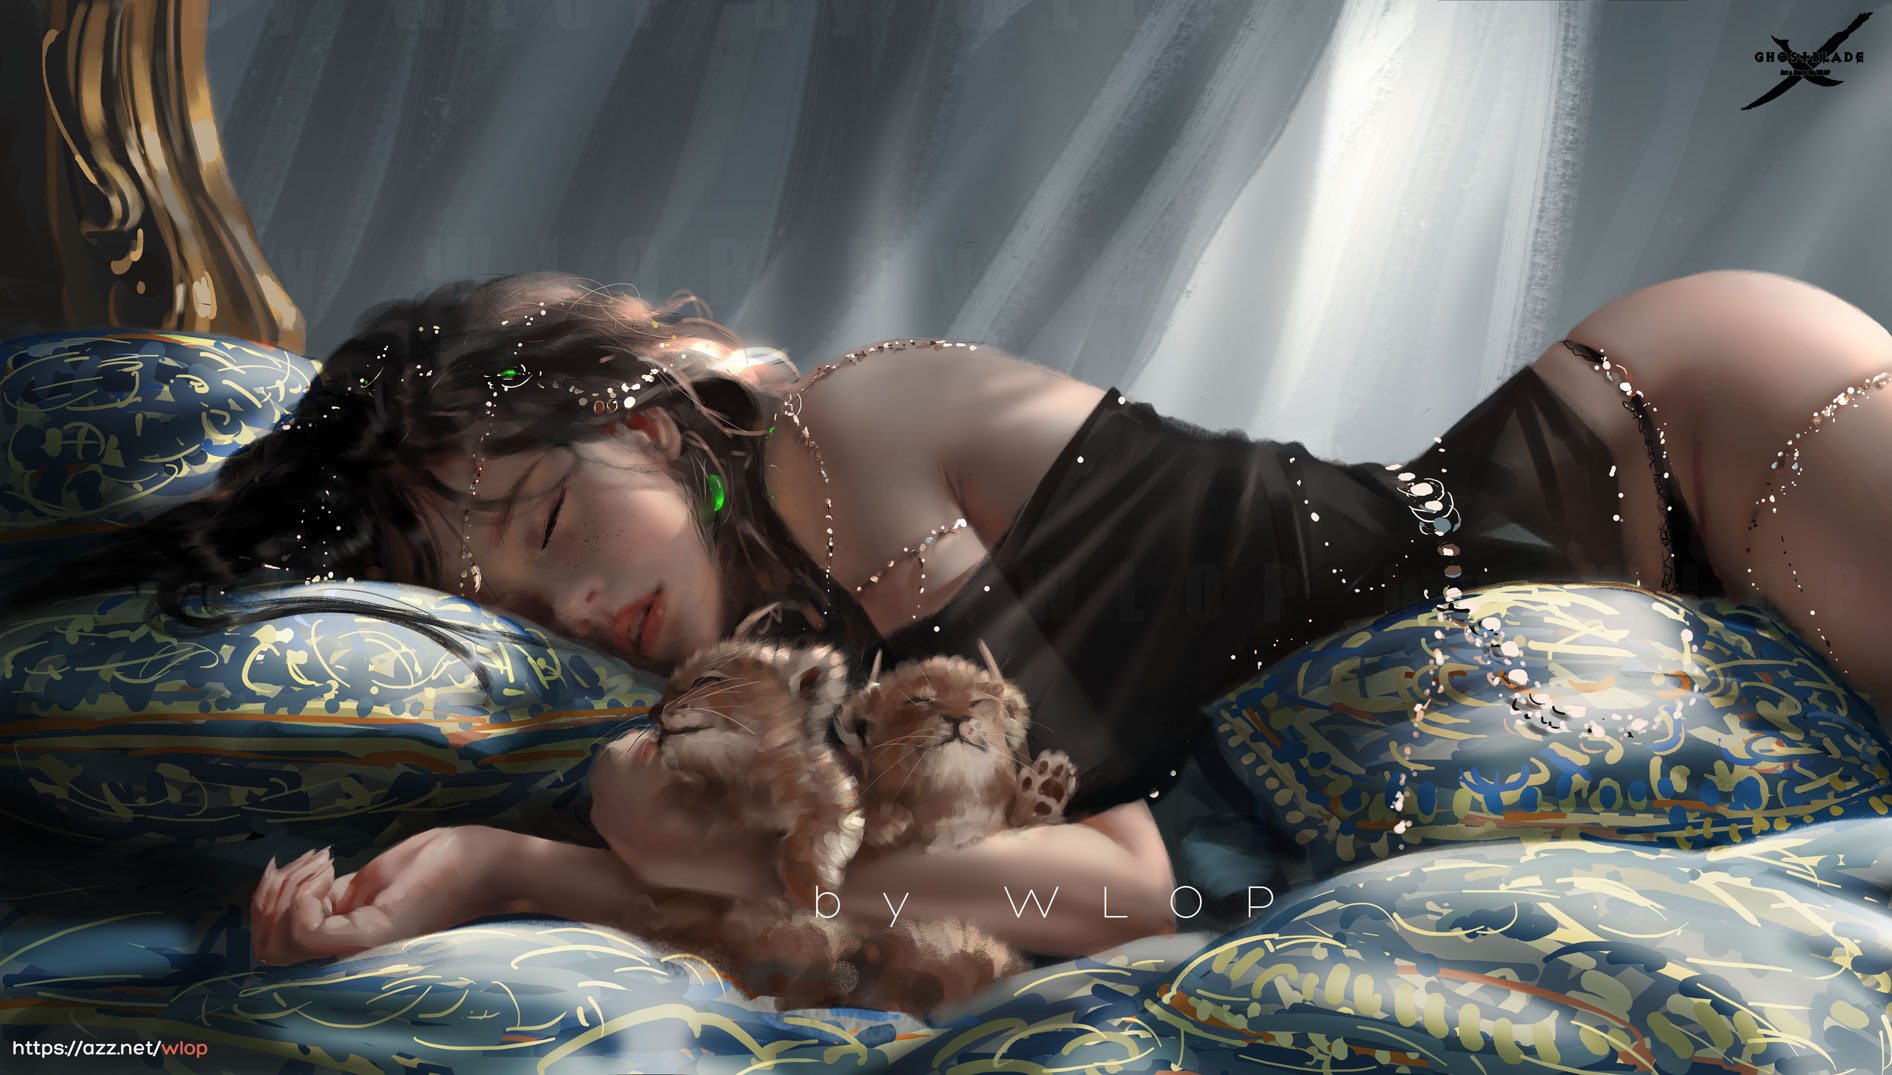 Фото Спящая девушка лежит со львятами, by WLOP